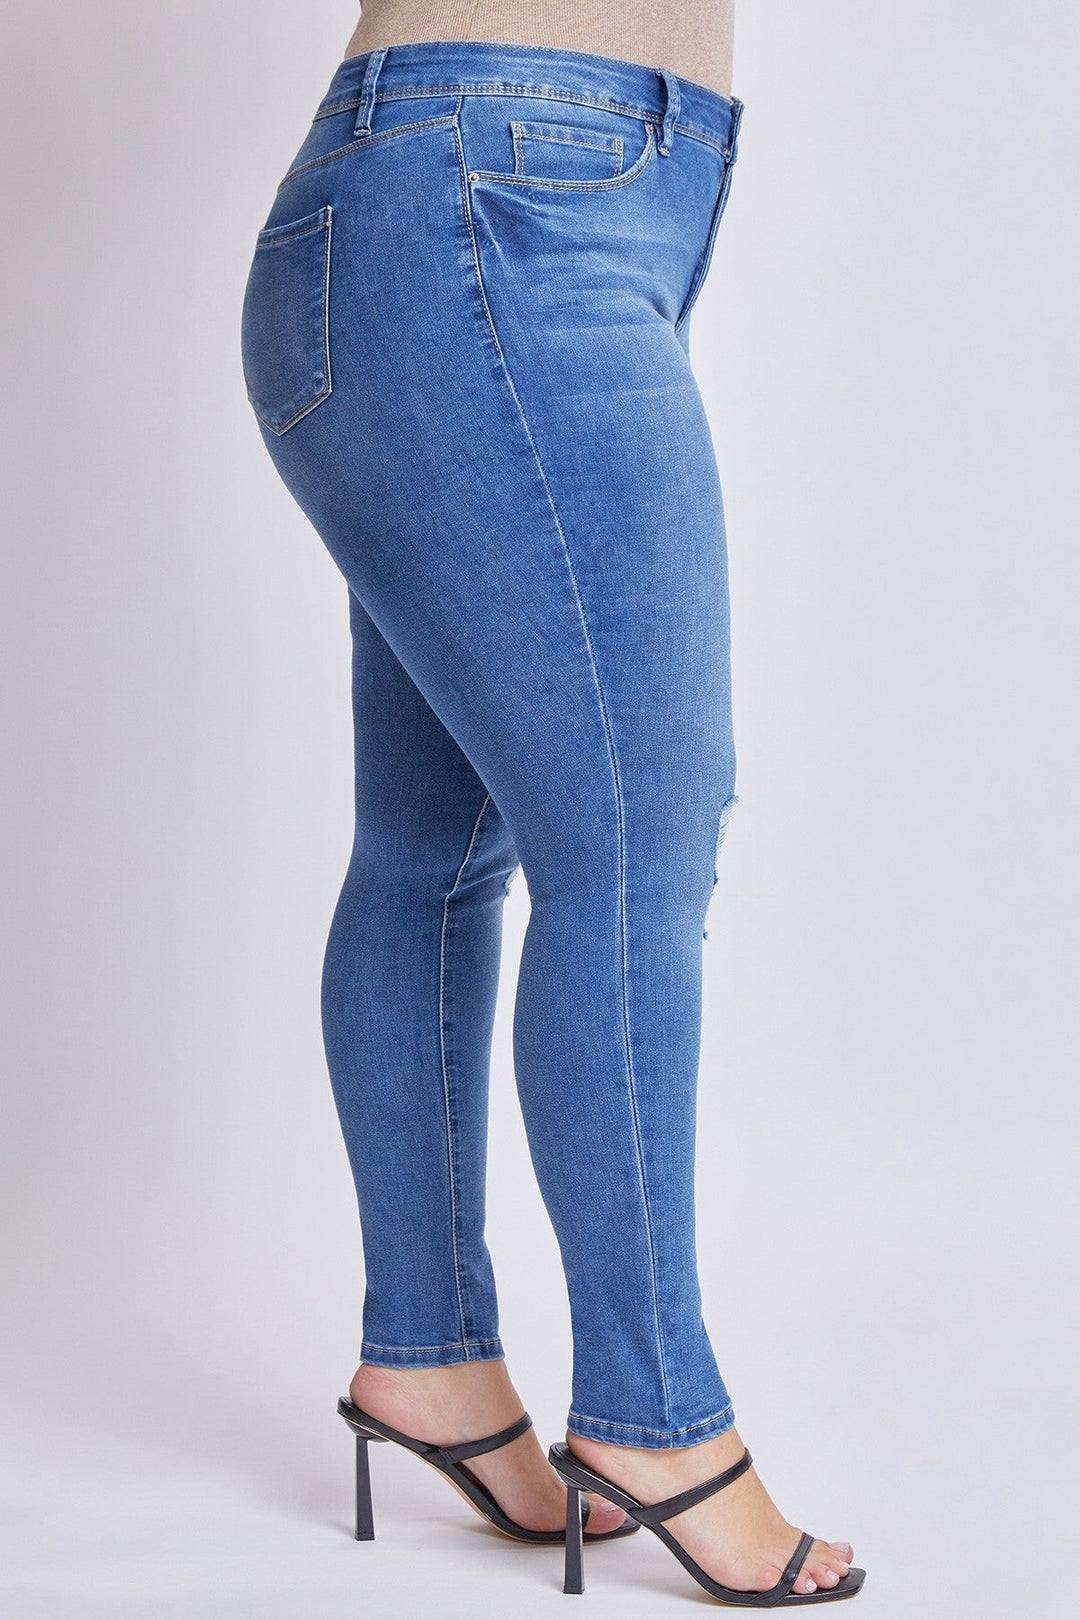 YMI Jeans Plus Size Sarah Basic 5 Pocket High-Rise Ripped  Skinny Jean - Medium Wash